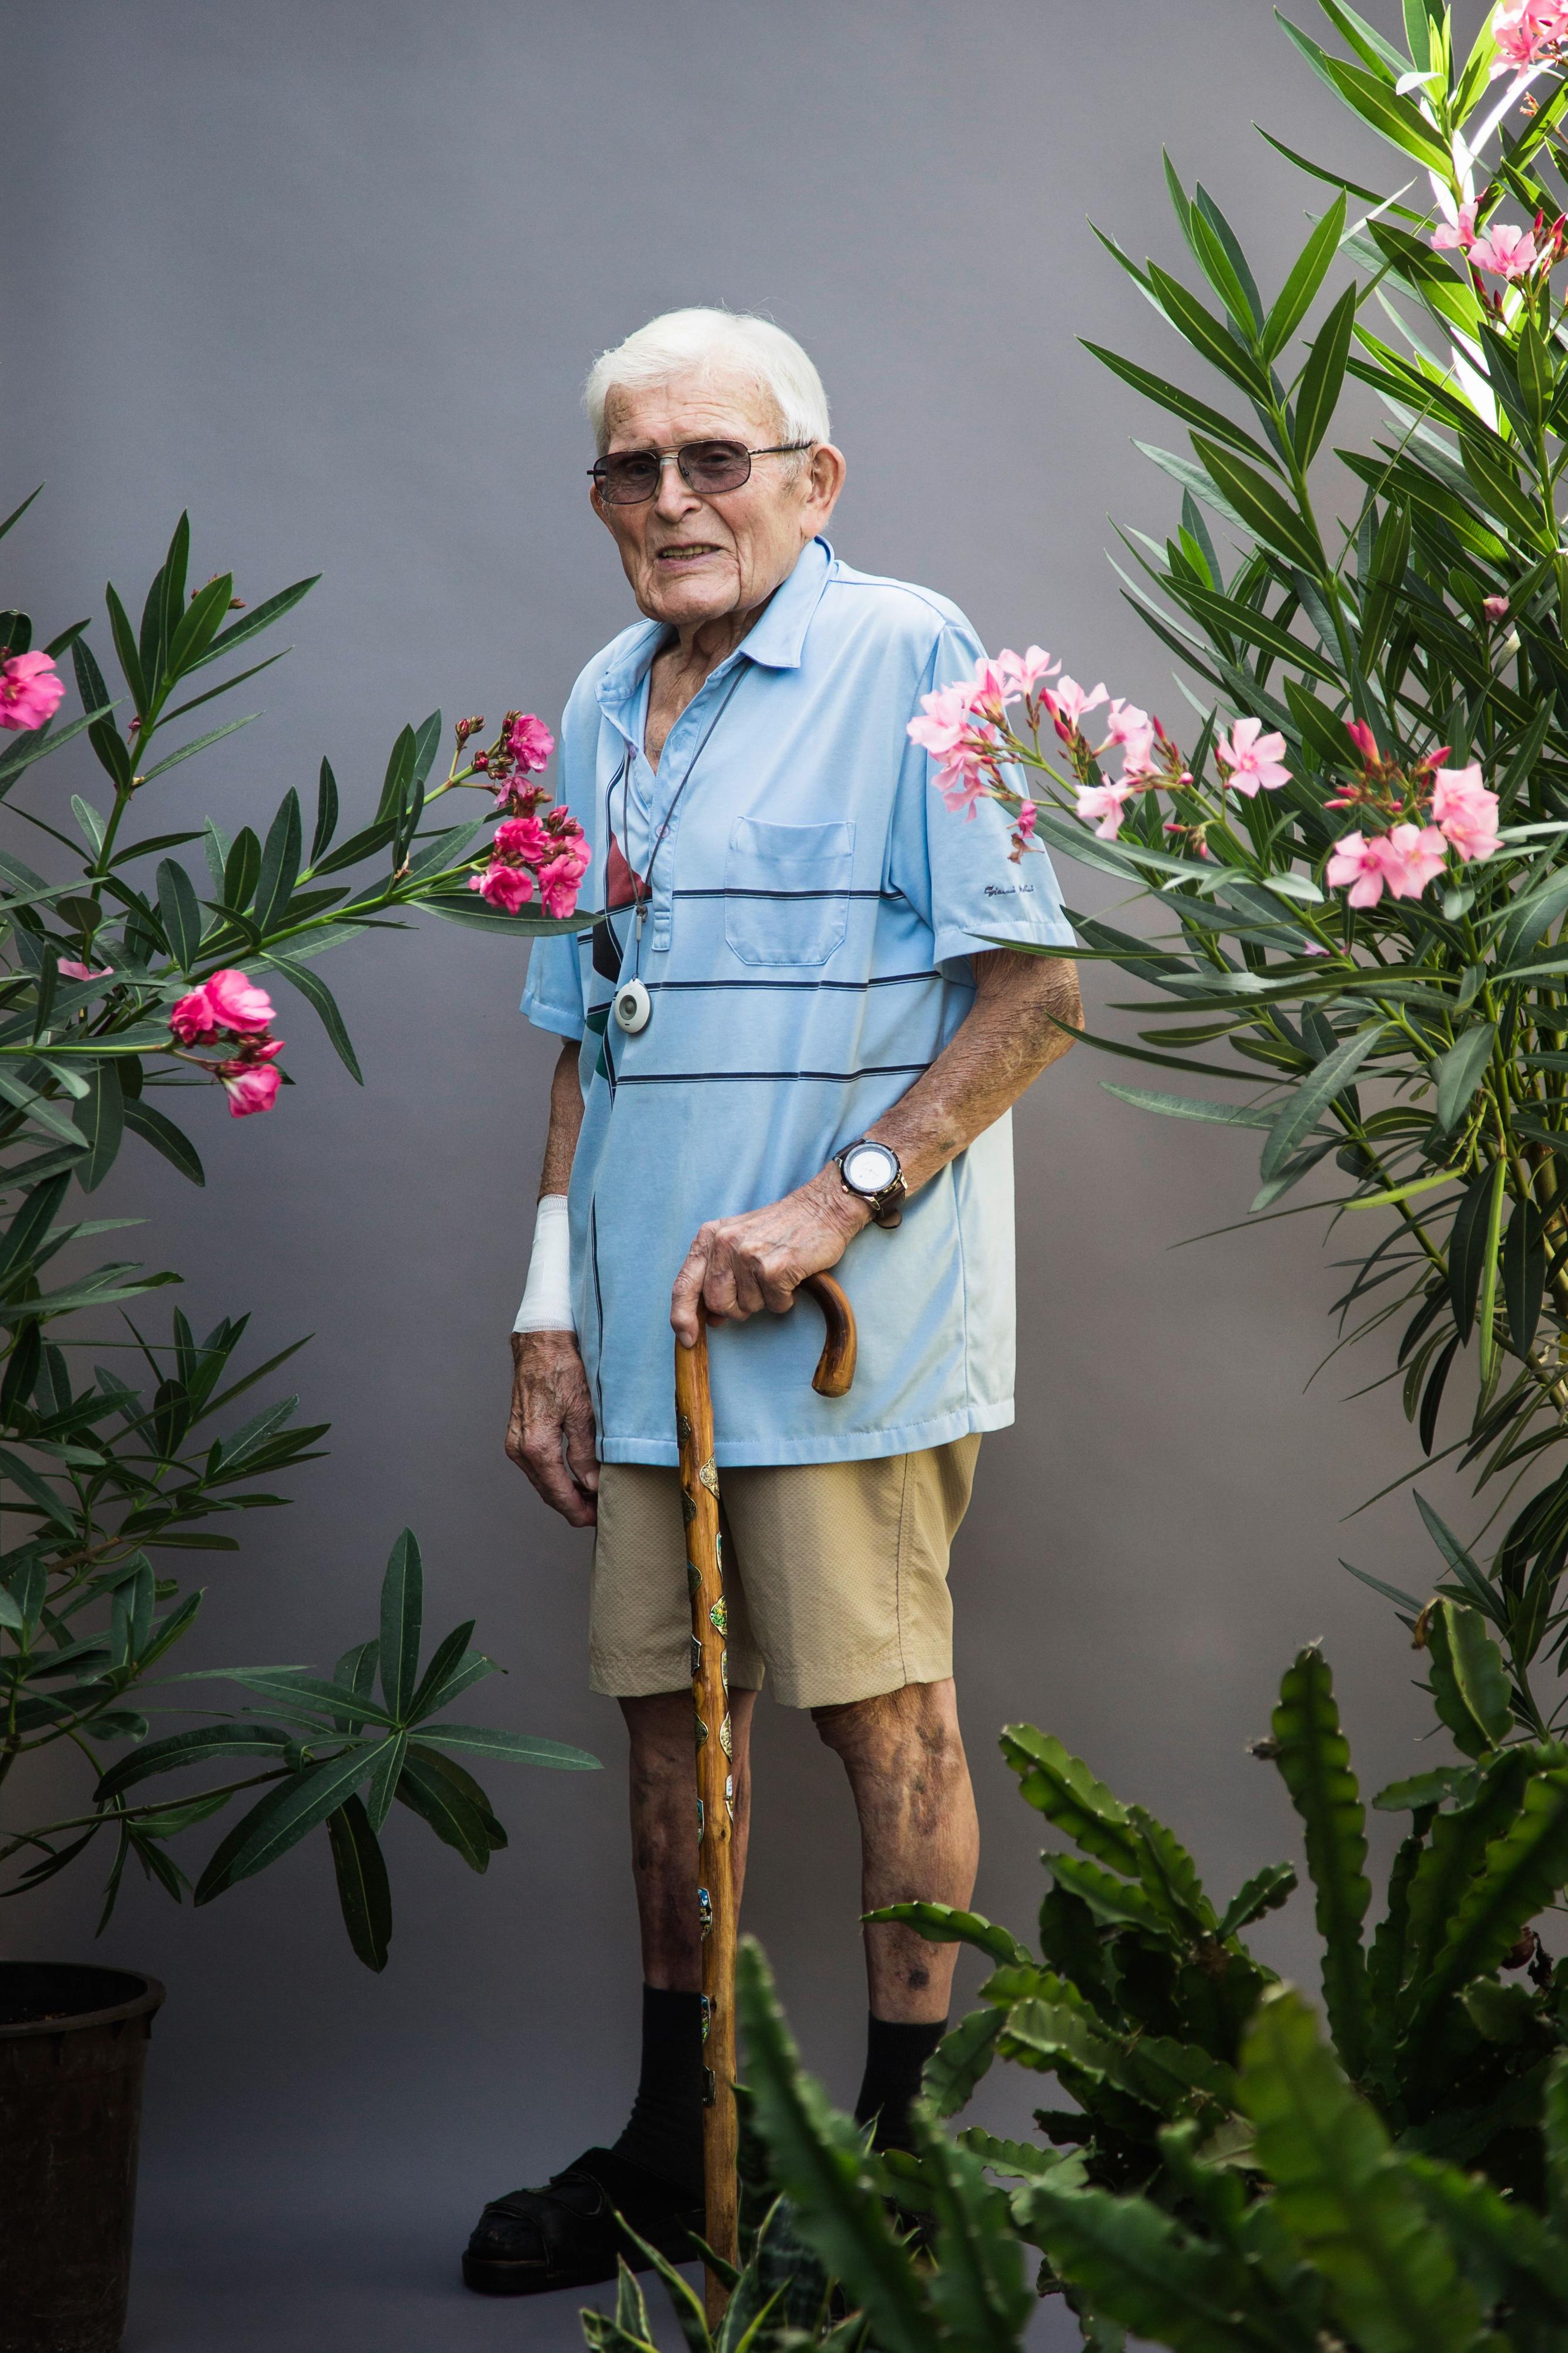 Ein älterer Mann steht mit Stock zwischen Pflanzen vor einer grauen Wand.